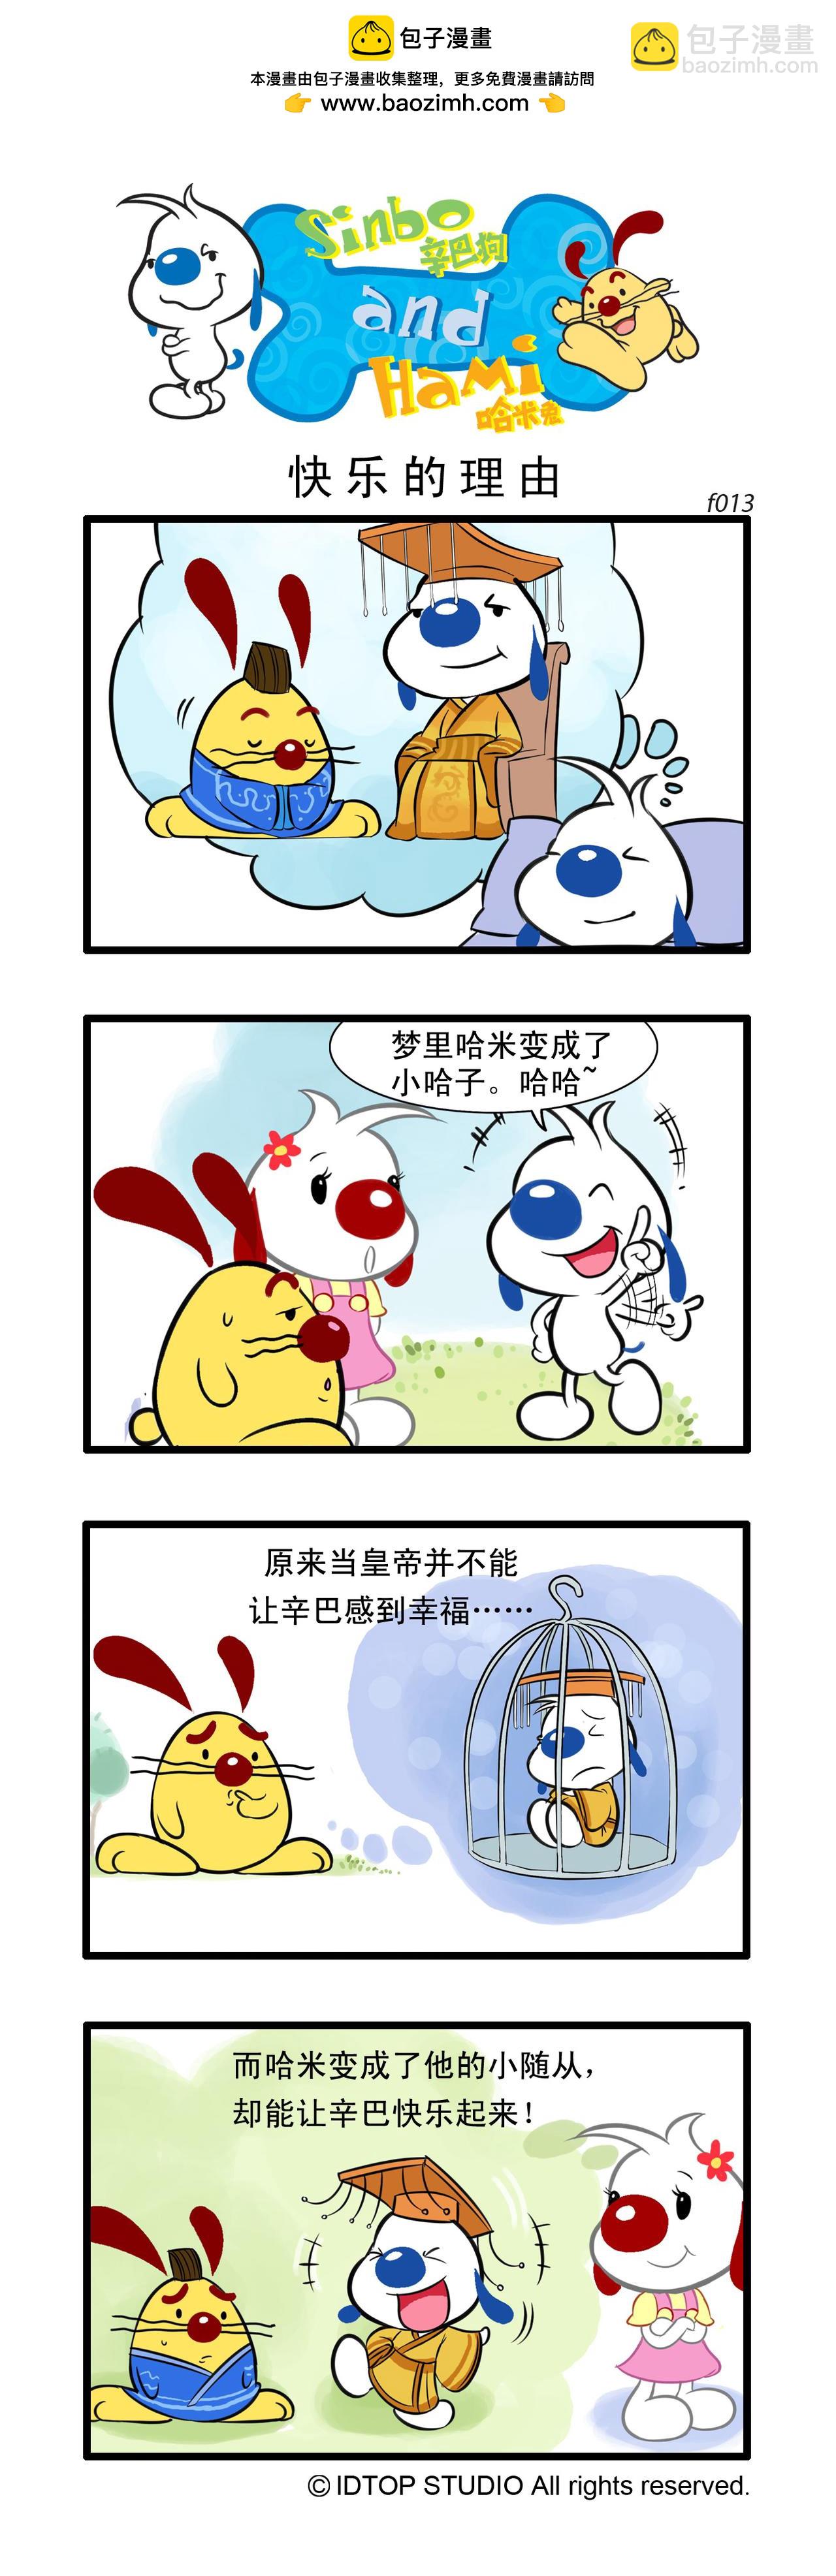 辛巴狗日常漫畫 - 多格5 - 1